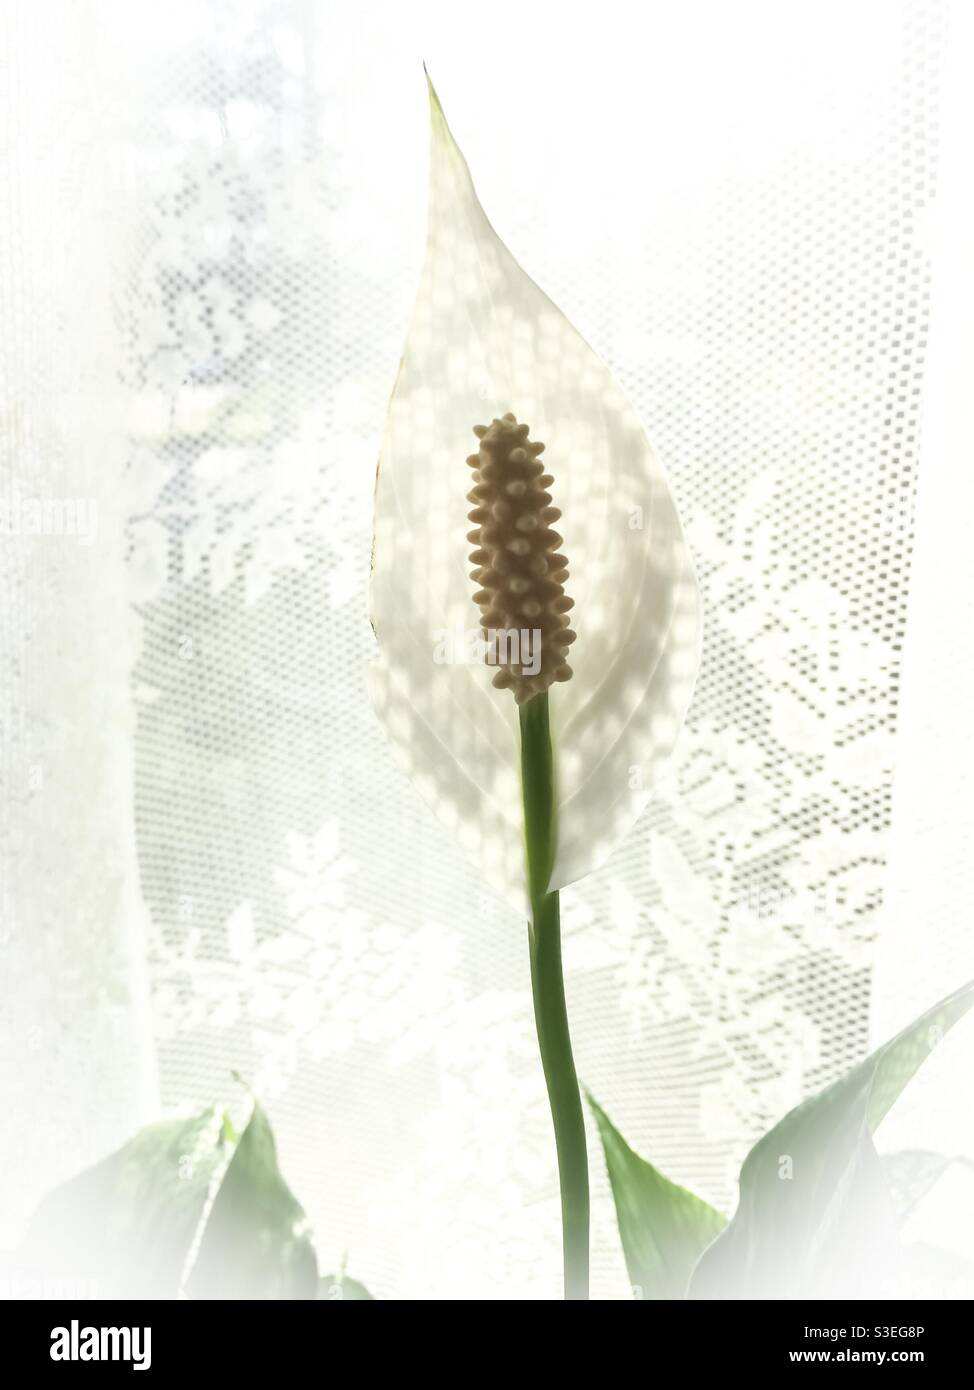 Bianco su bianco, con un fiore di un giglio della Pace sullo sfondo del merletto. Spathiphylllum Wallisii. Foto Stock